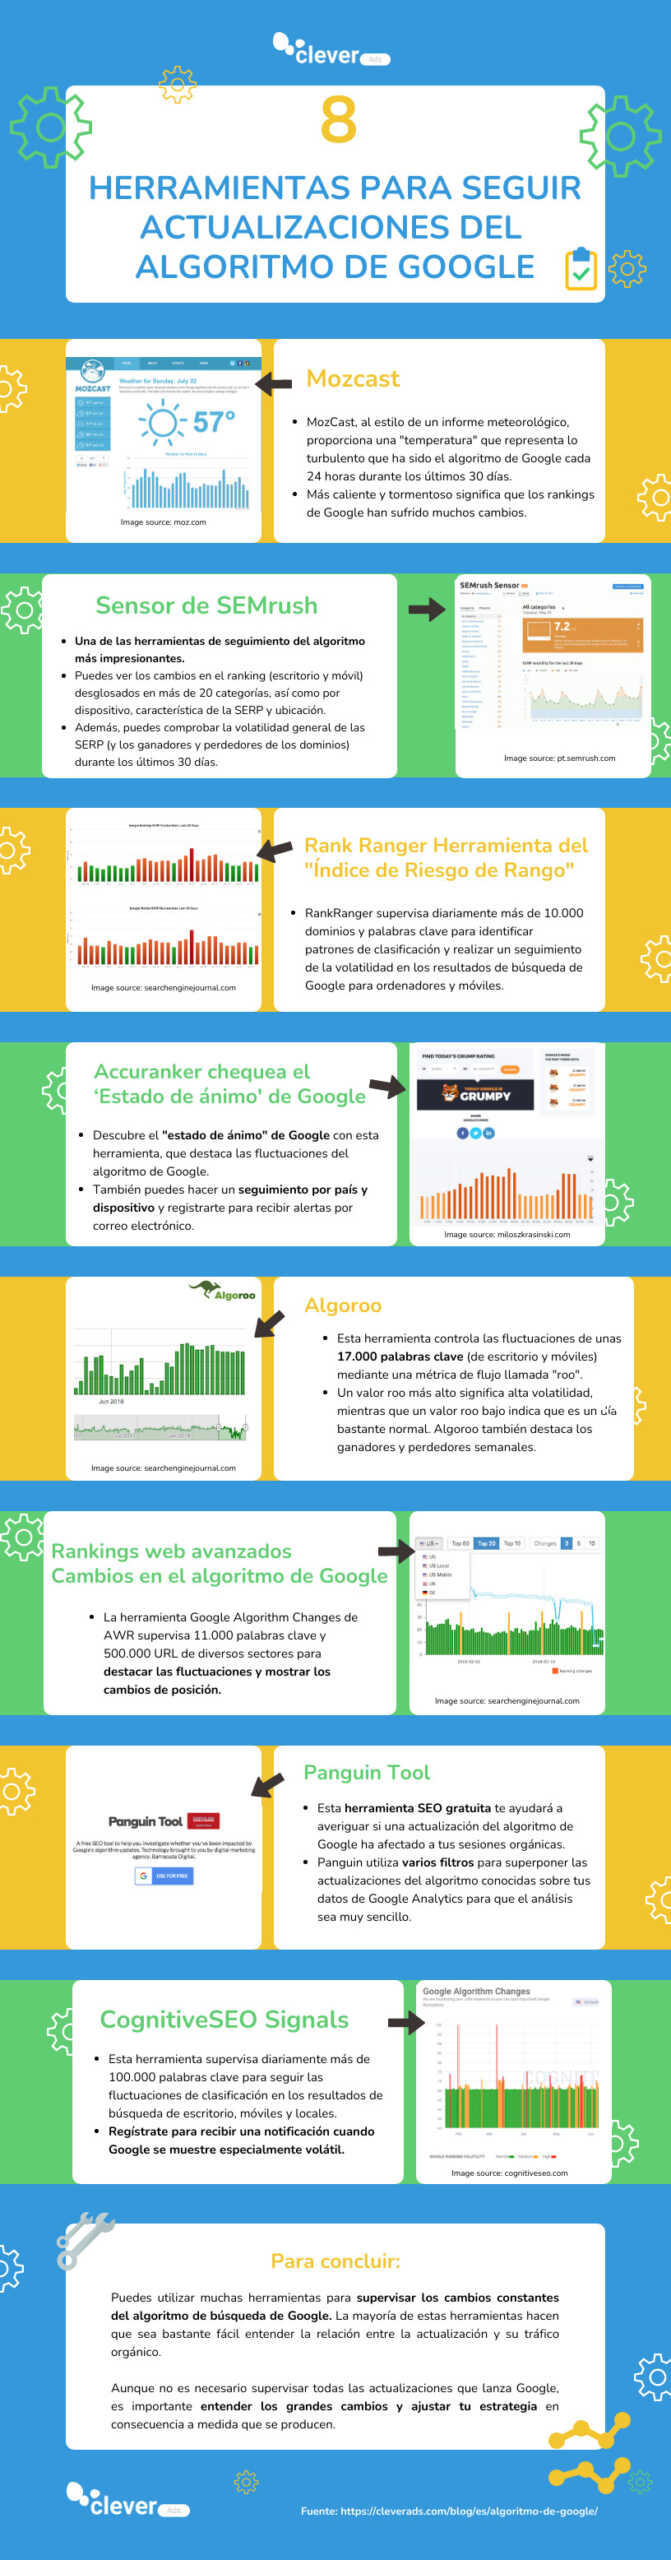 infográfico herramientas seguimiento algoritmo de google